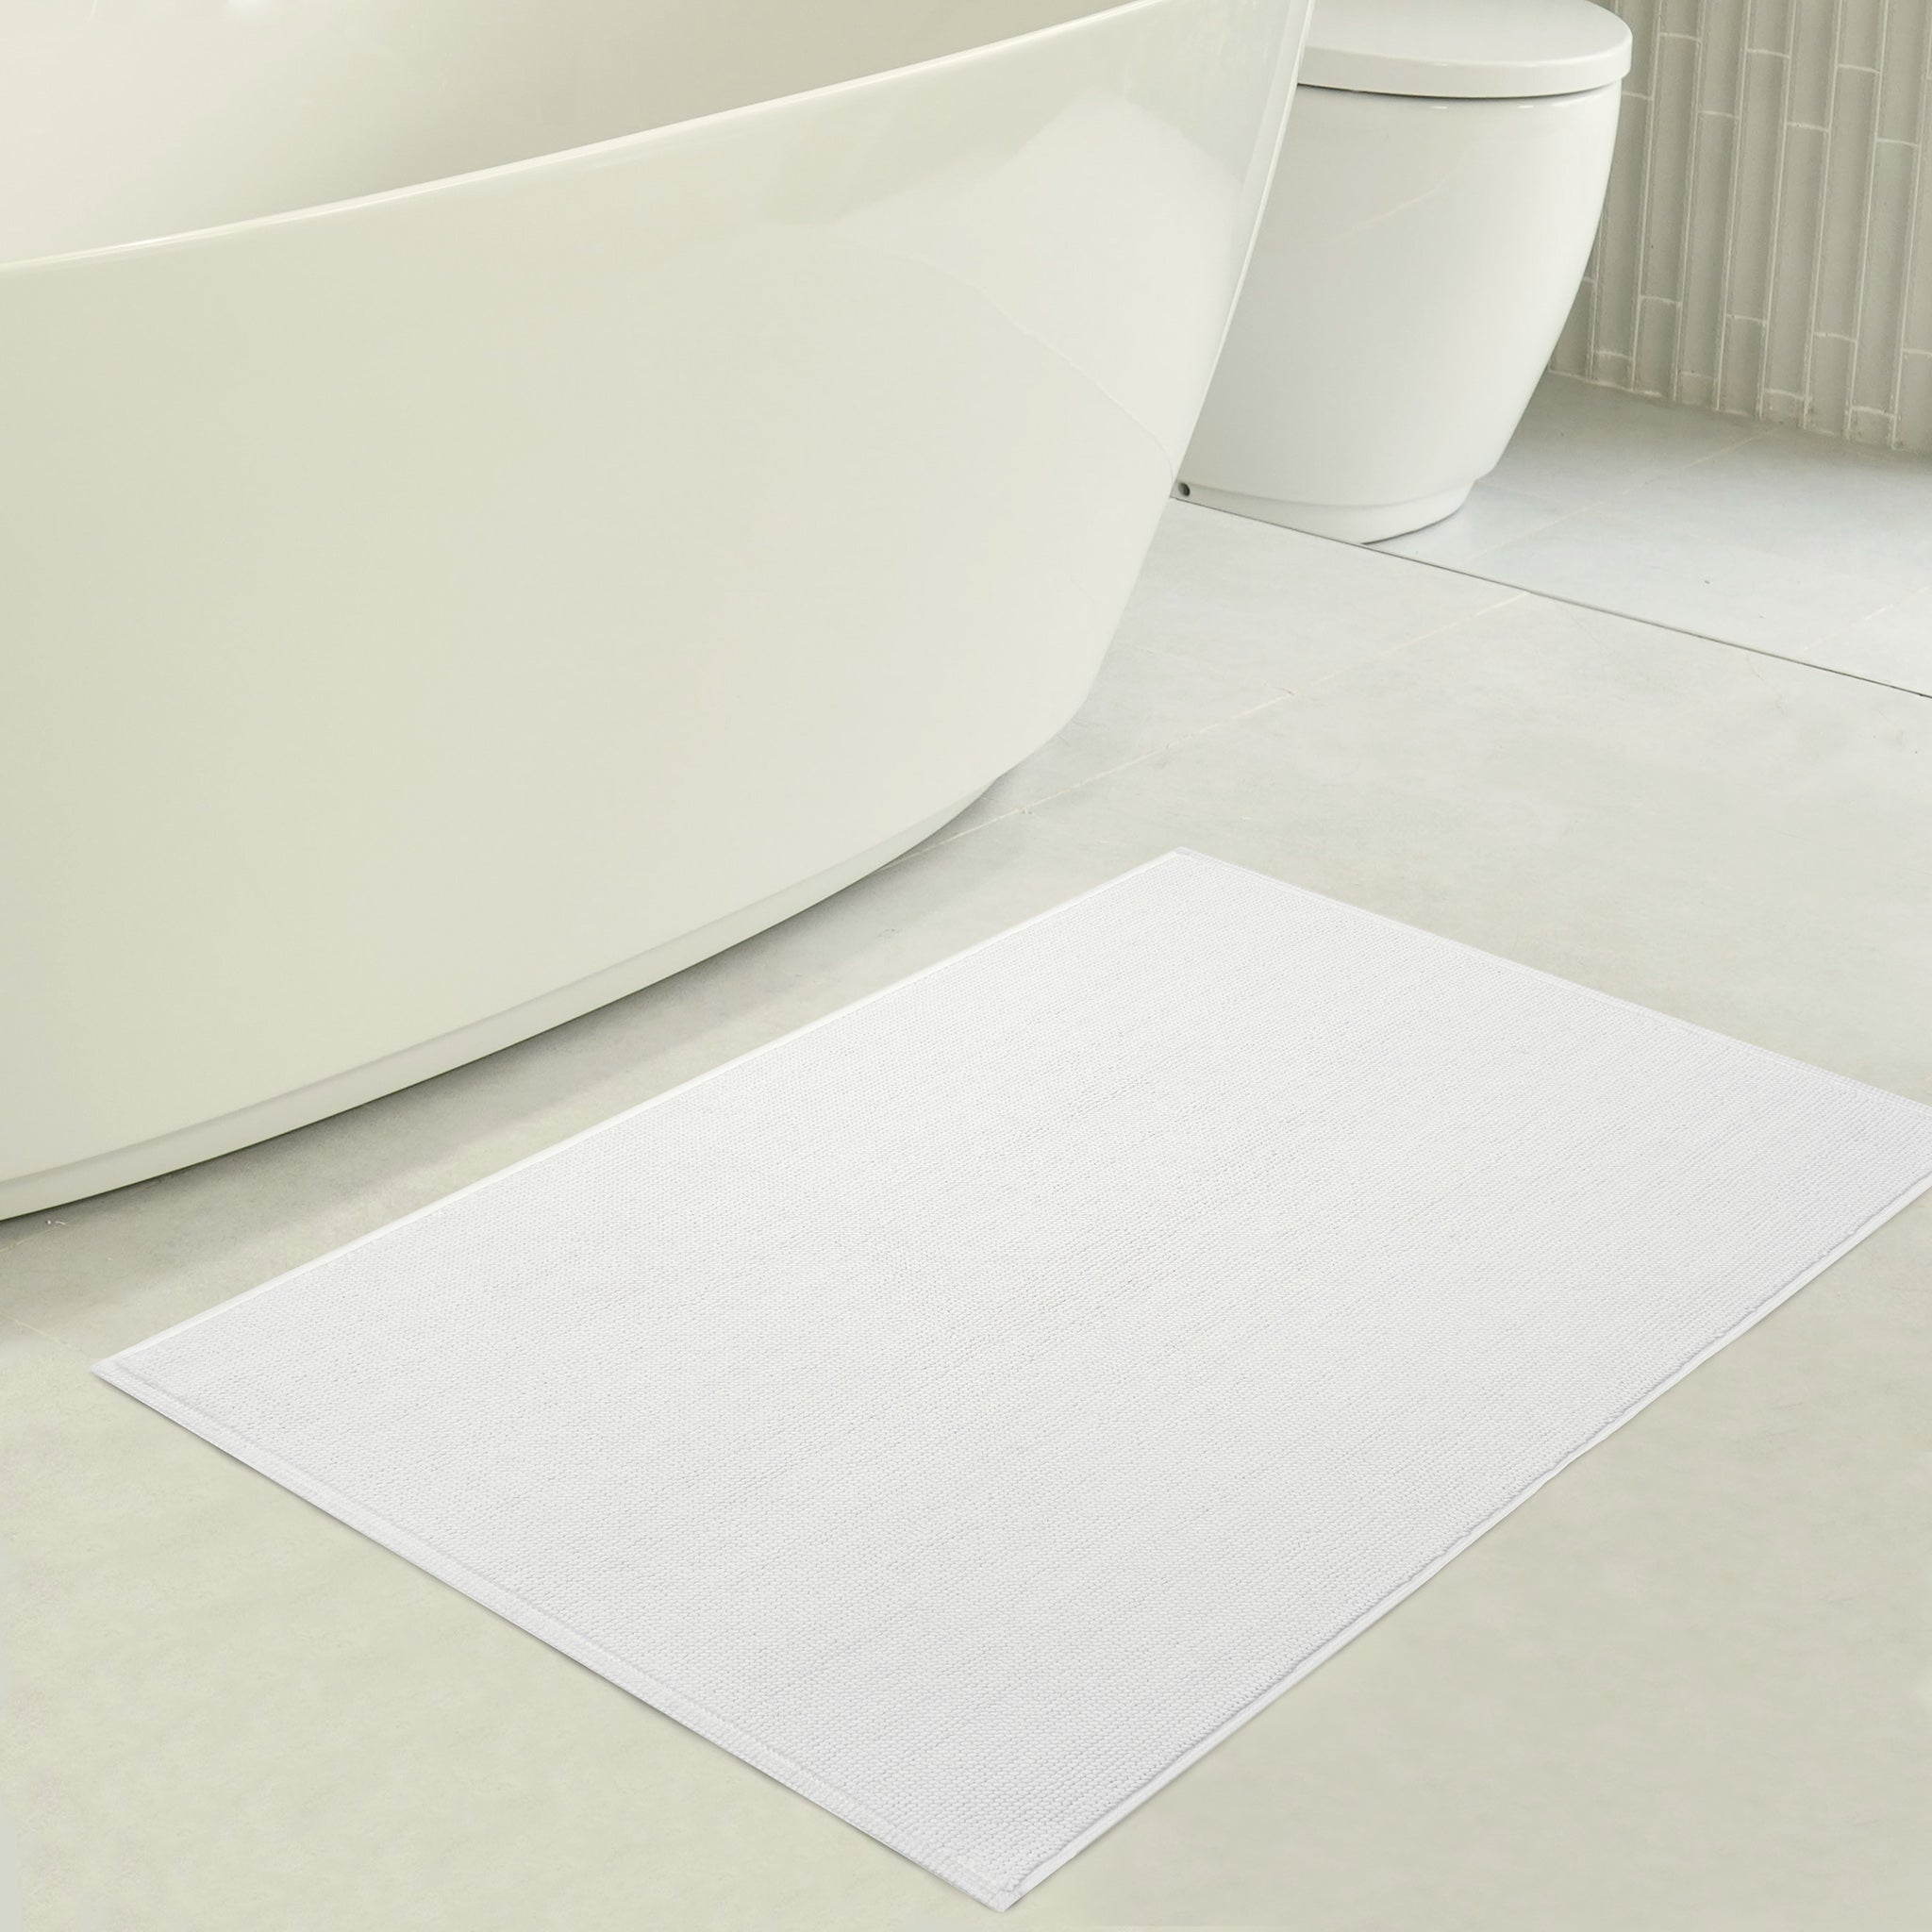 American Soft Linen 100% Cotton Non-Slip 17x24 Inch Bath Rug white-3